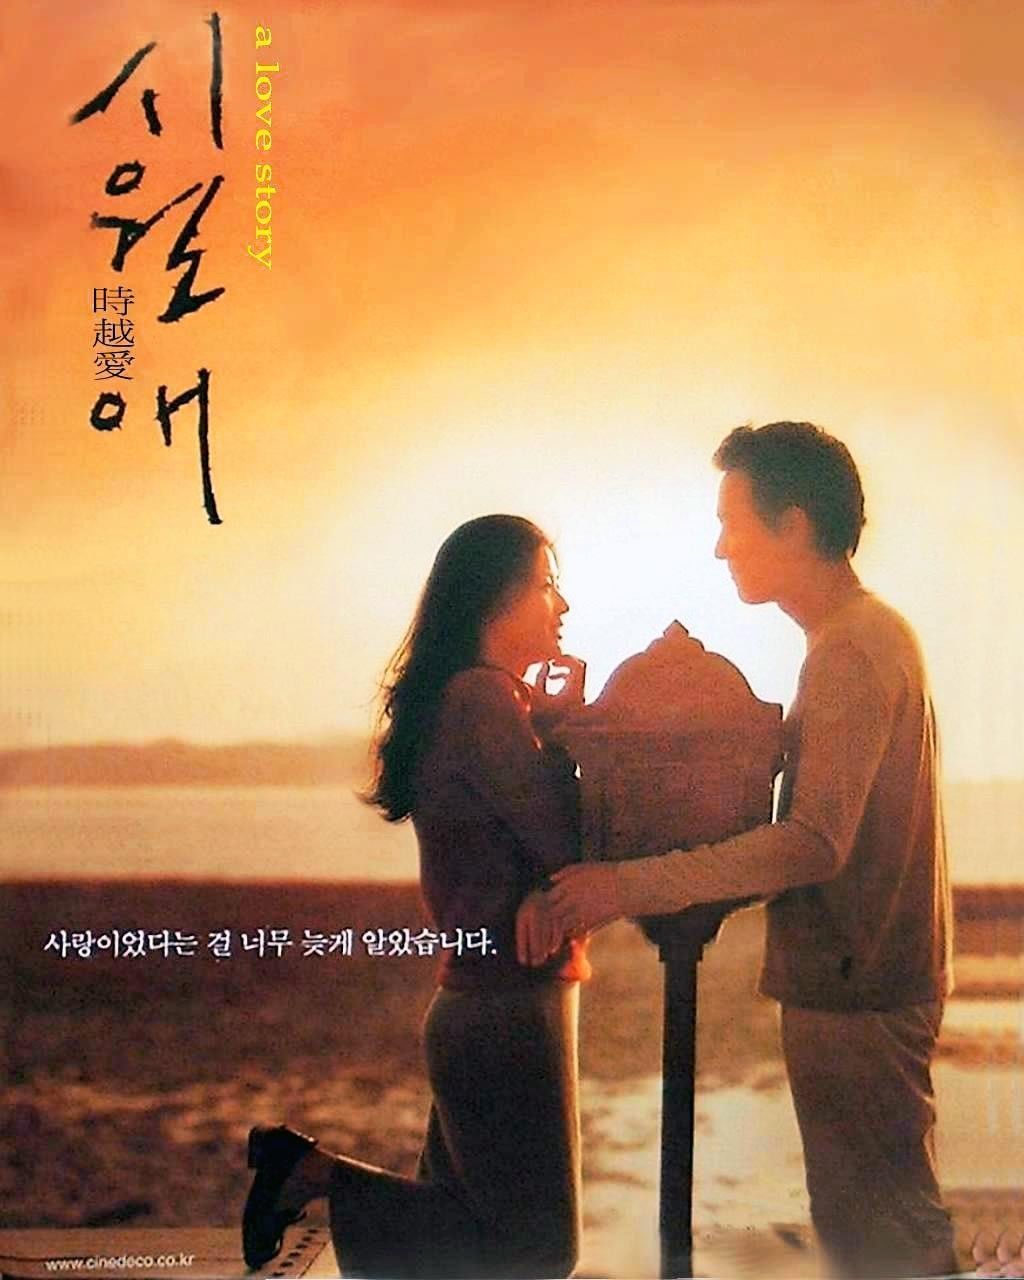 10 Film Korea Romantis yang Wajib Kamu Tonton